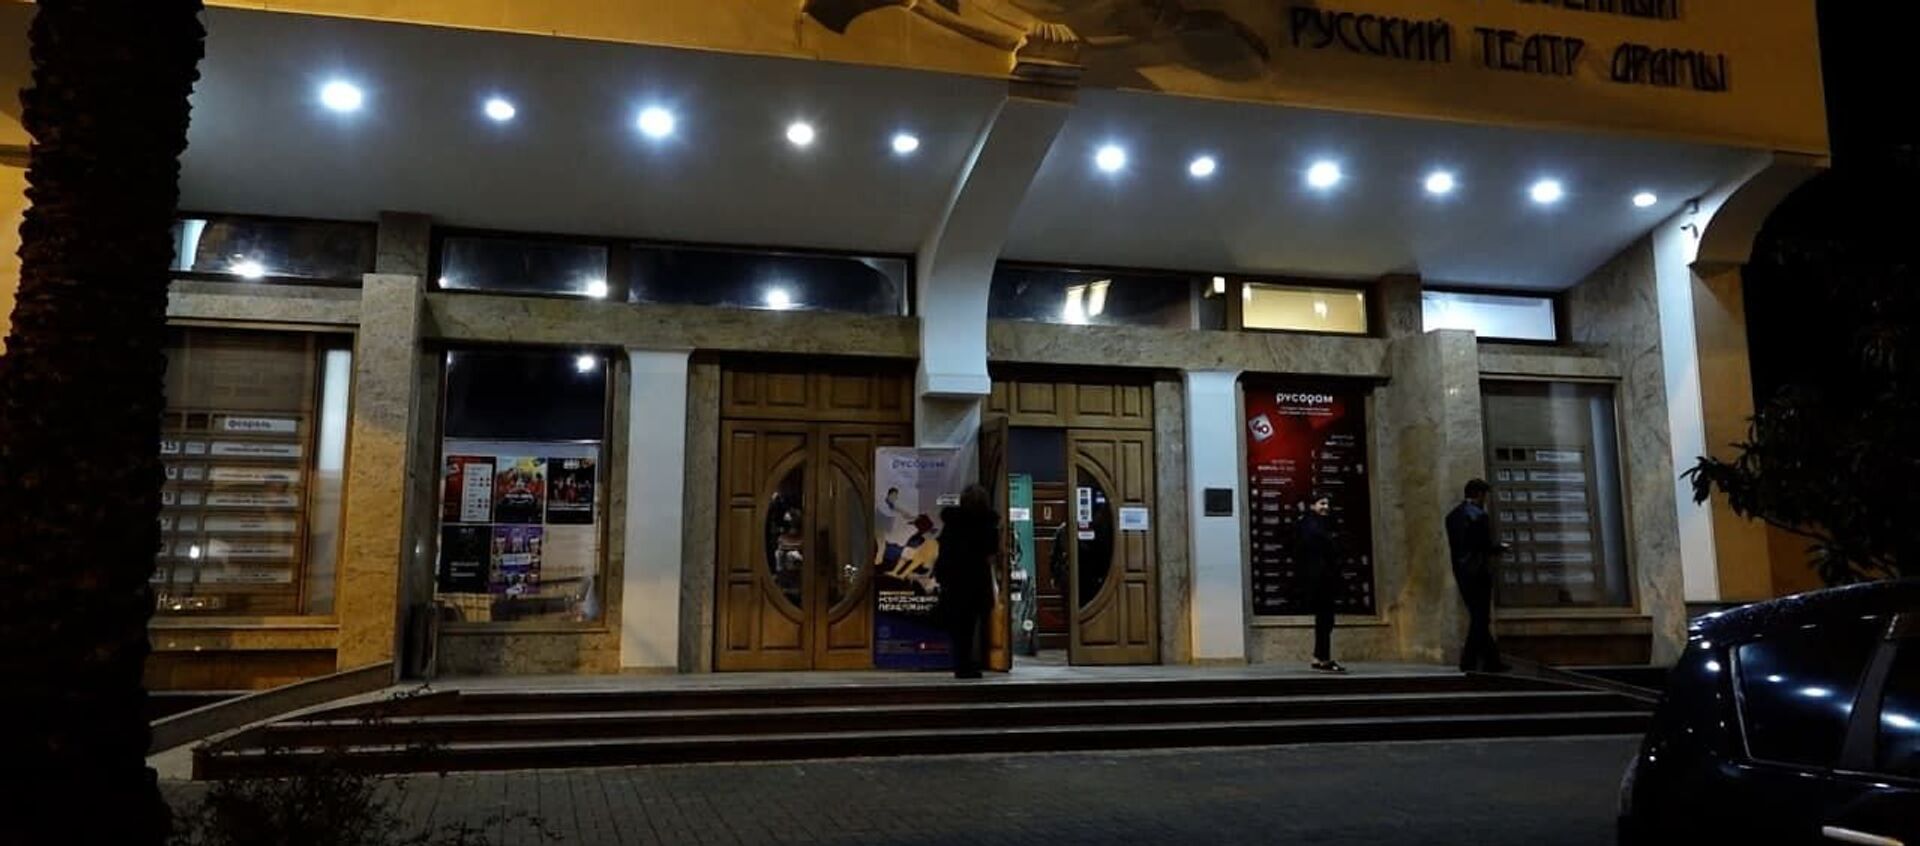 Долгожданное событие: театры Абхазии открывают свои двери - Sputnik Абхазия, 1920, 15.02.2021